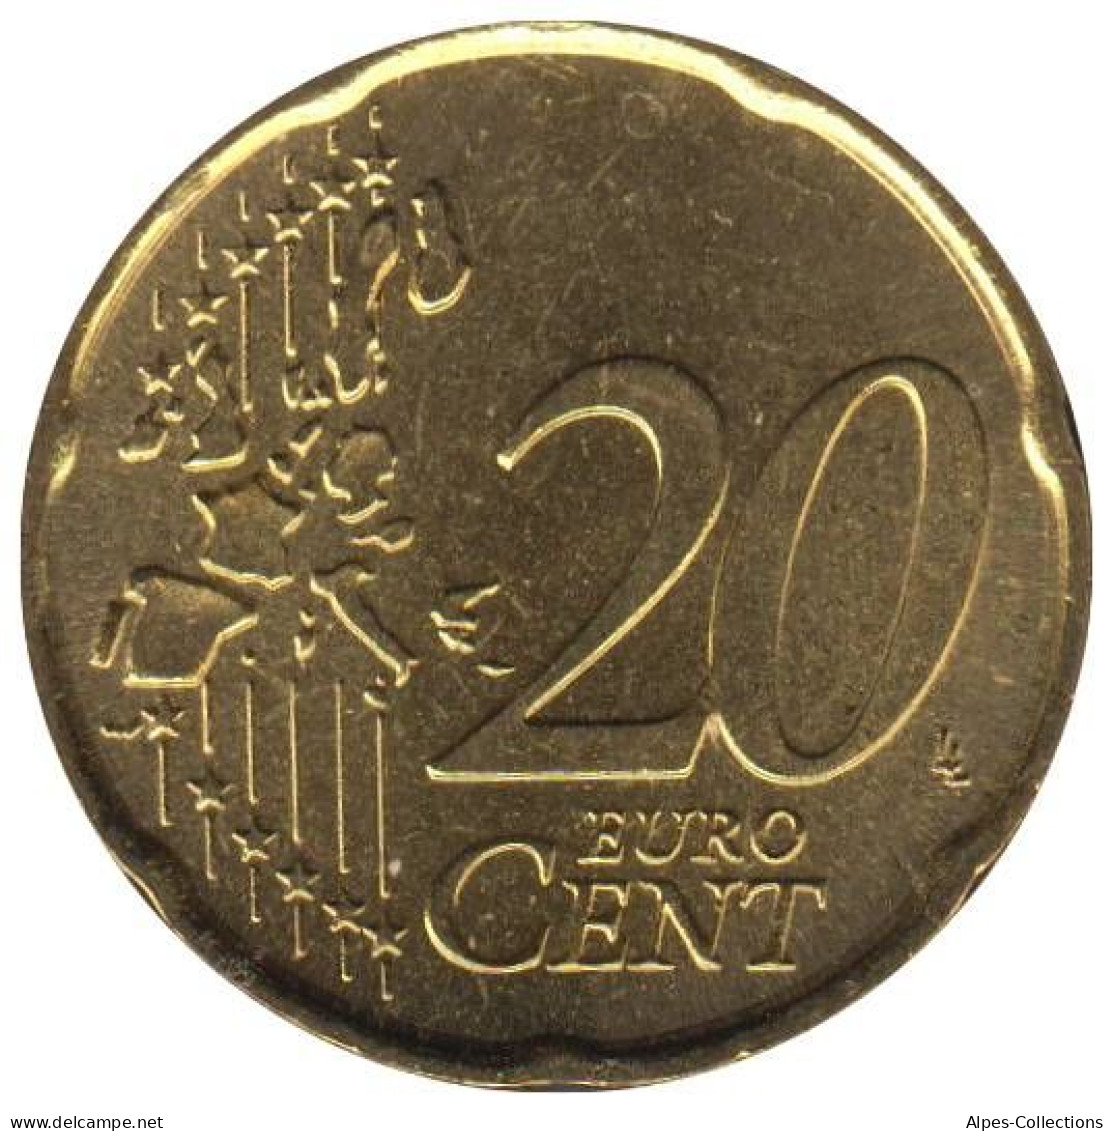 SA02007.1 - SAINT MARIN - 20 Cents - 2007 - San Marino